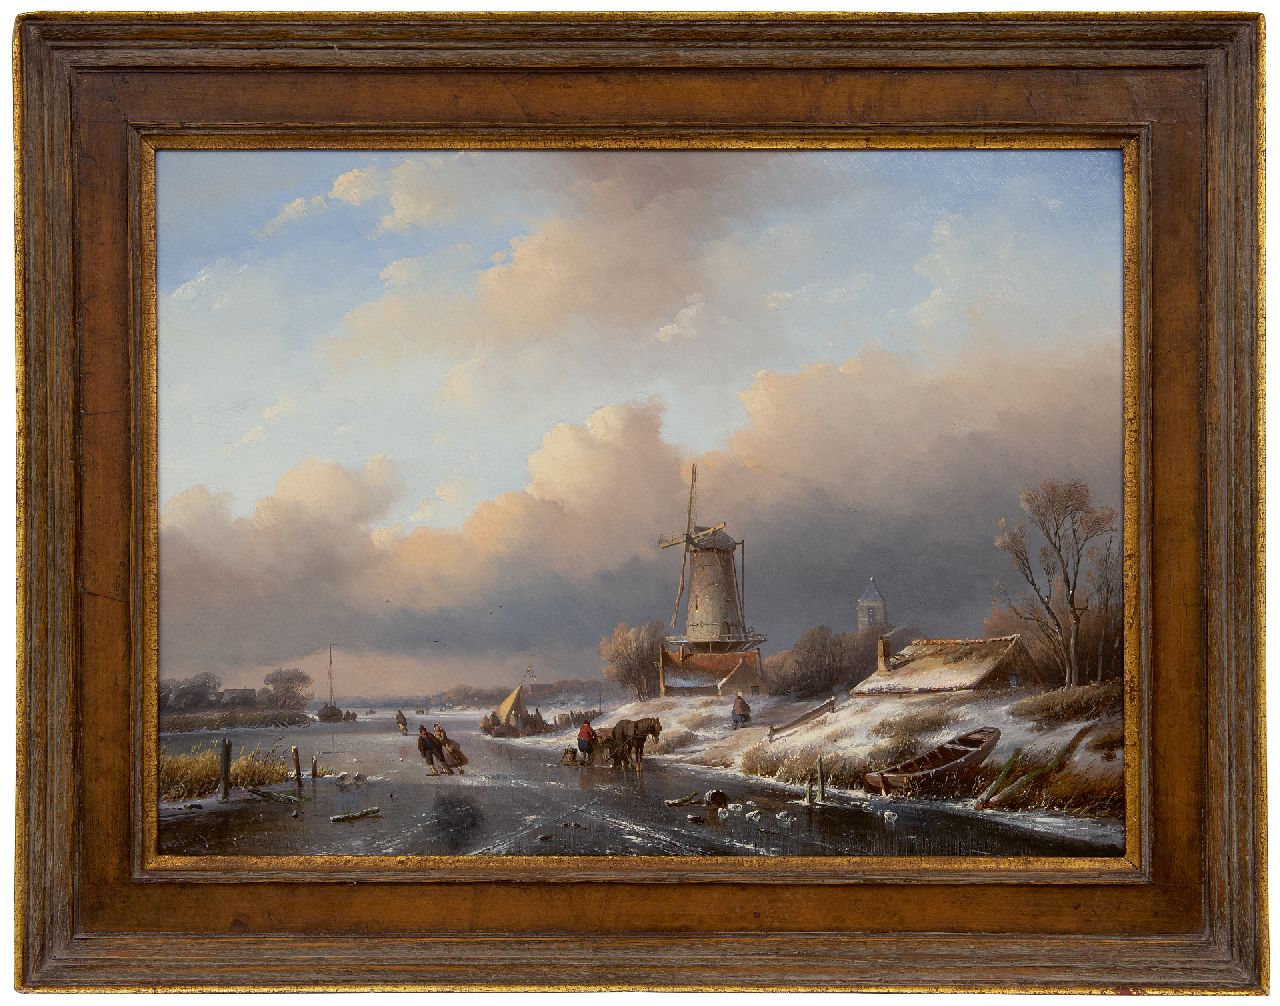 Spohler J.J.  | Jan Jacob Spohler | Schilderijen te koop aangeboden | Winterlandschap met landvolk en schaatsers, olieverf op paneel 40,7 x 55,3 cm, gesigneerd linksonder